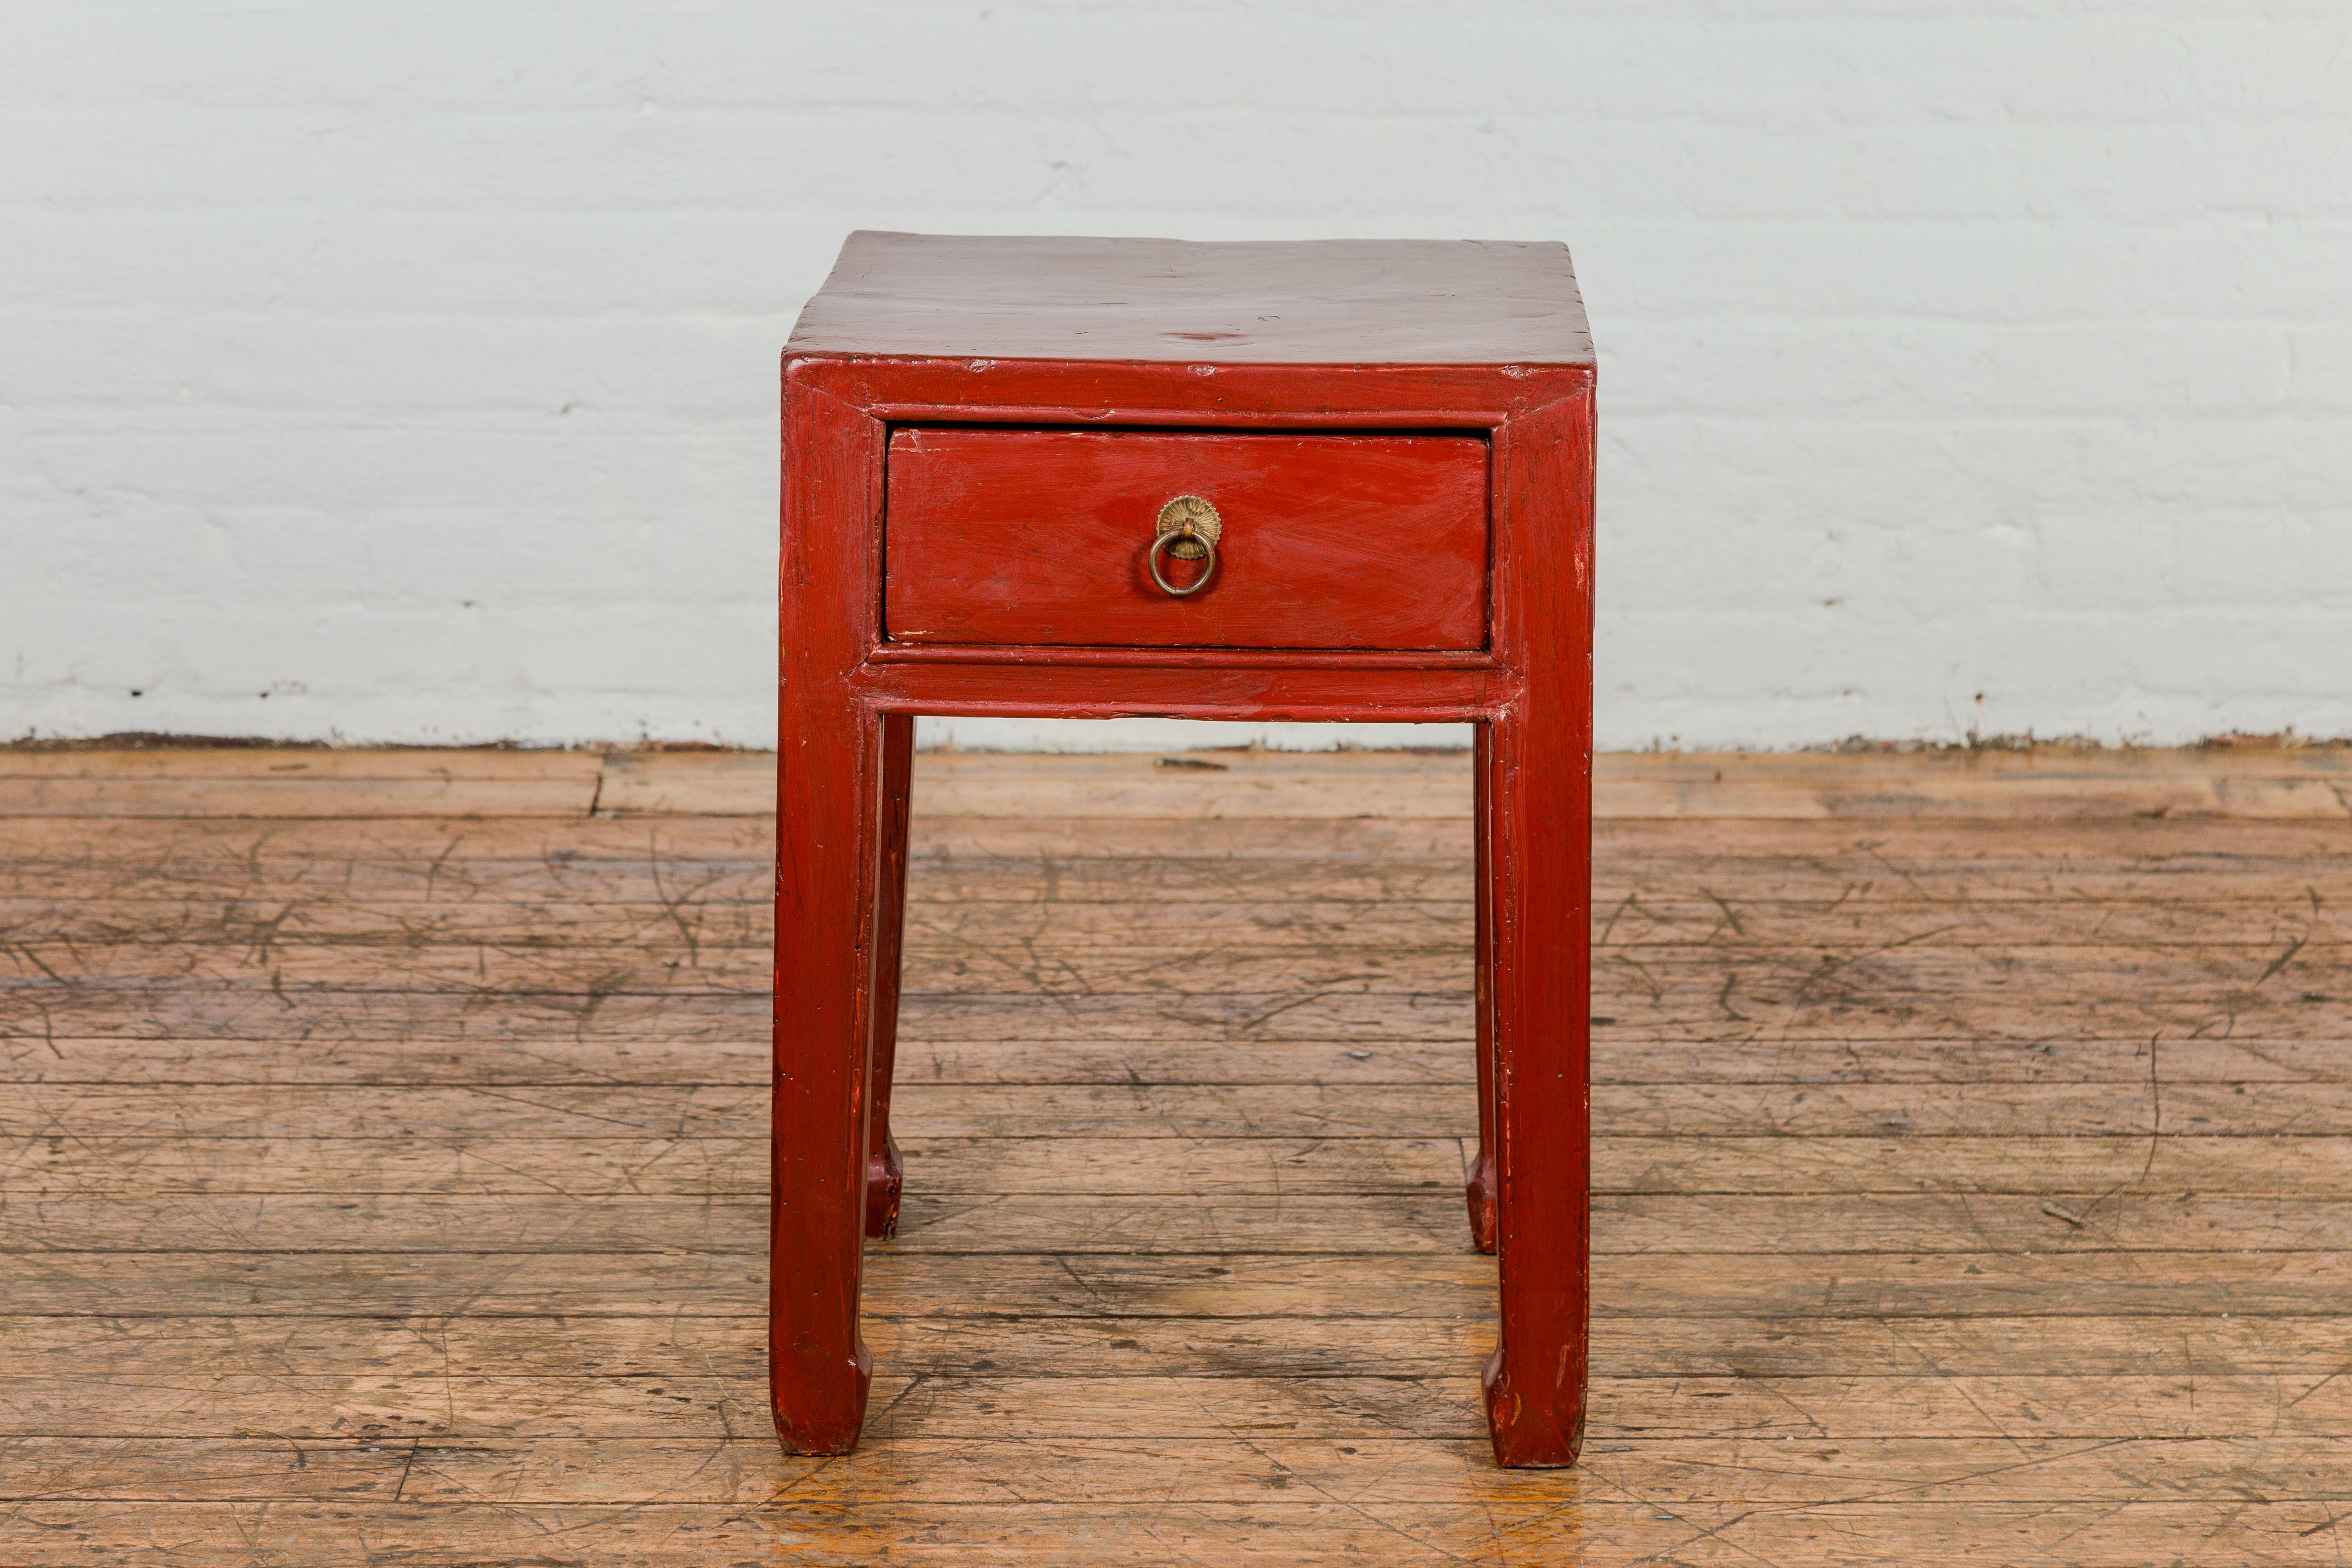 Table d'appoint en bois laqué rouge de la fin de la dynastie Qing, datant du début du 20e siècle, avec un seul tiroir et des pieds en sabot de cheval. Cette table d'appoint de la fin de la dynastie Qing date du début du XXe siècle et est imprégnée